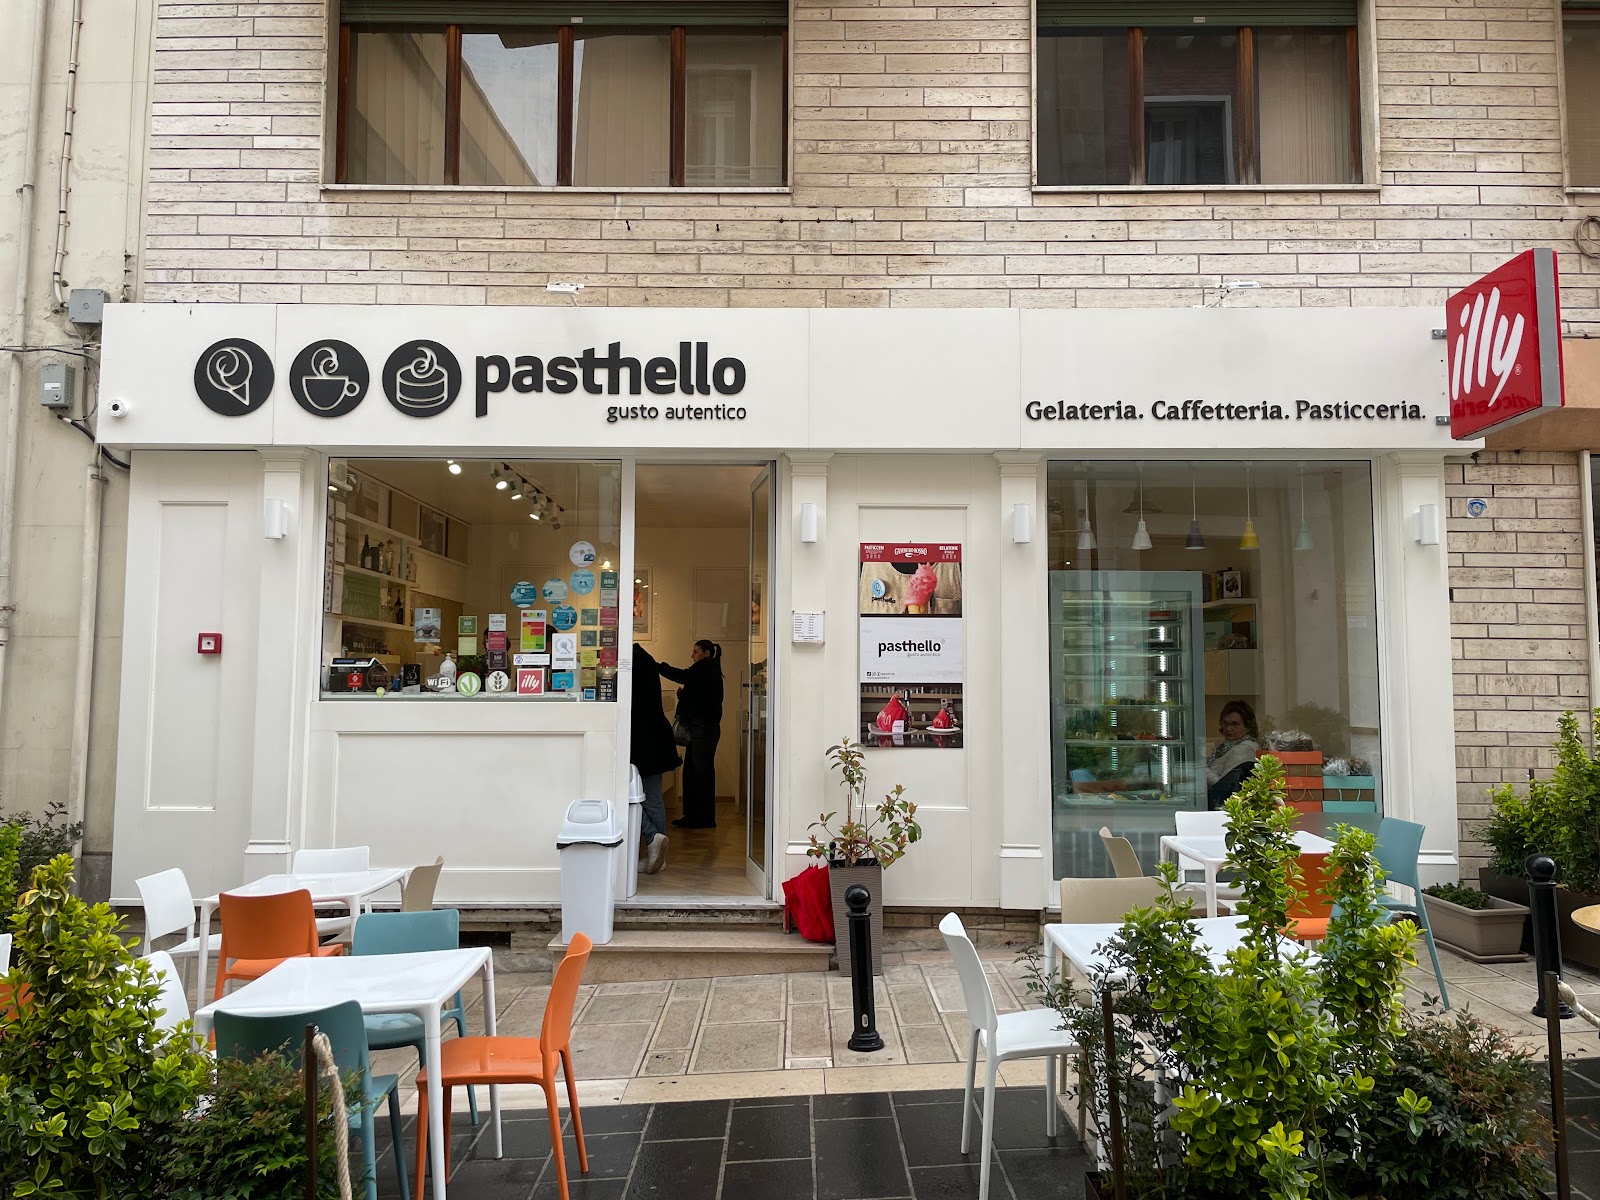 Foto di Pasthello | Pasticceria, gelateria, caffetteria